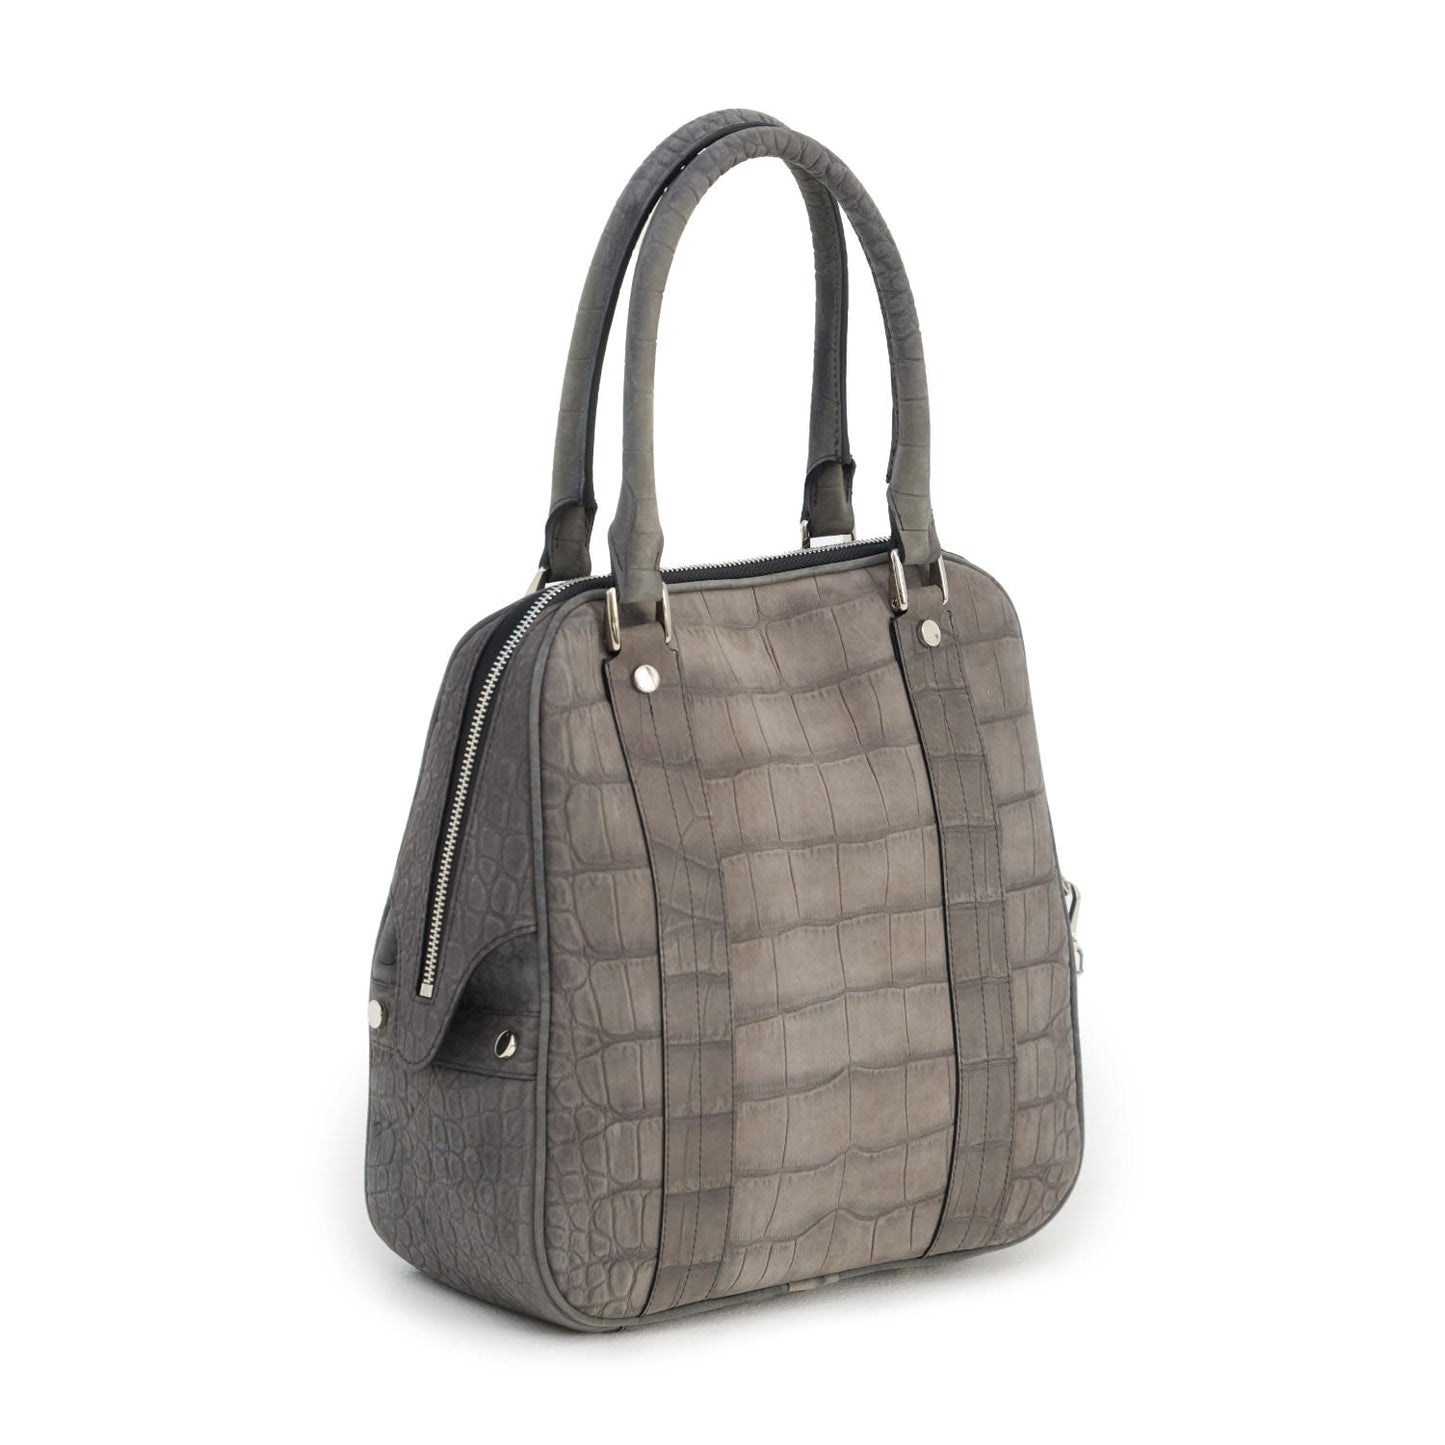 Croco Texture Leather Tote Handbag Grey Small